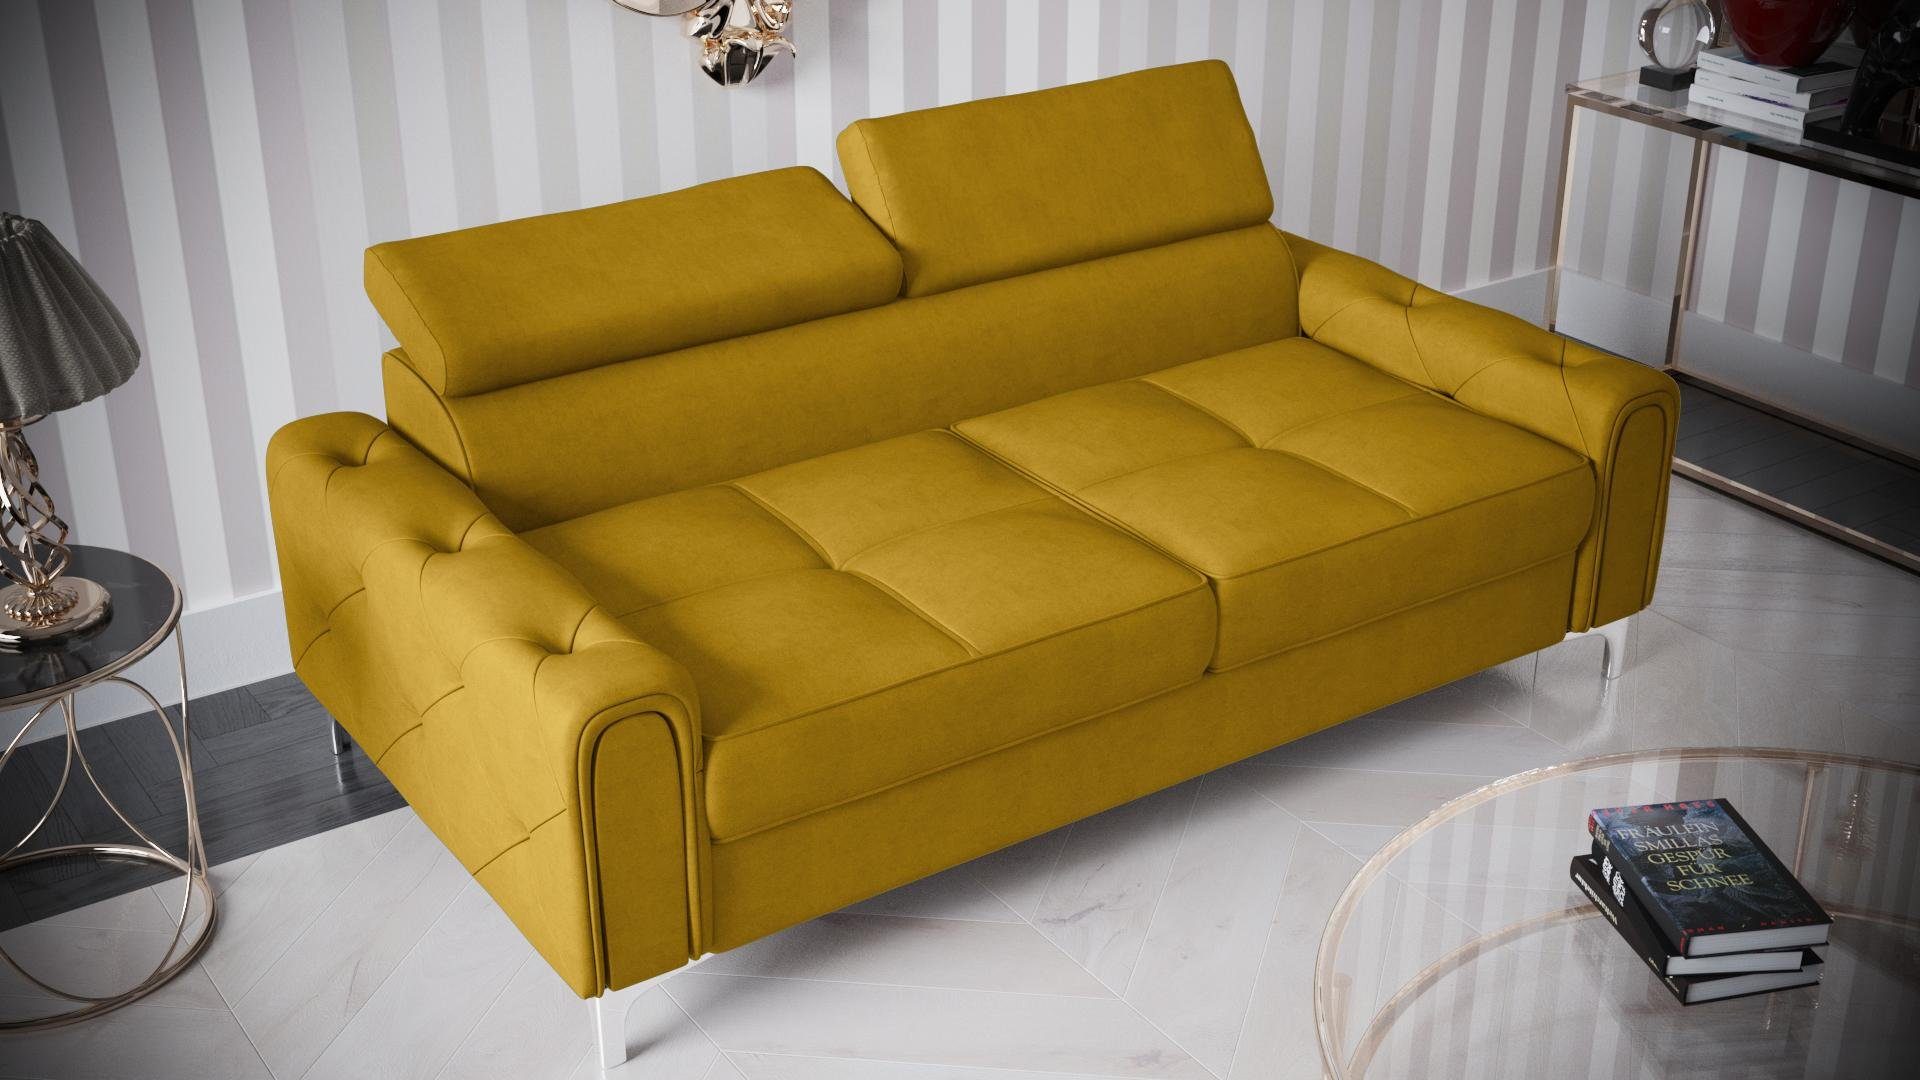 JVmoebel Sofa Designer 2-Sitzer Sofa | | Polster Sitz, Gelb Made Luxus Gelb Sofa Möbel Couch Gelb Couchen Europe in